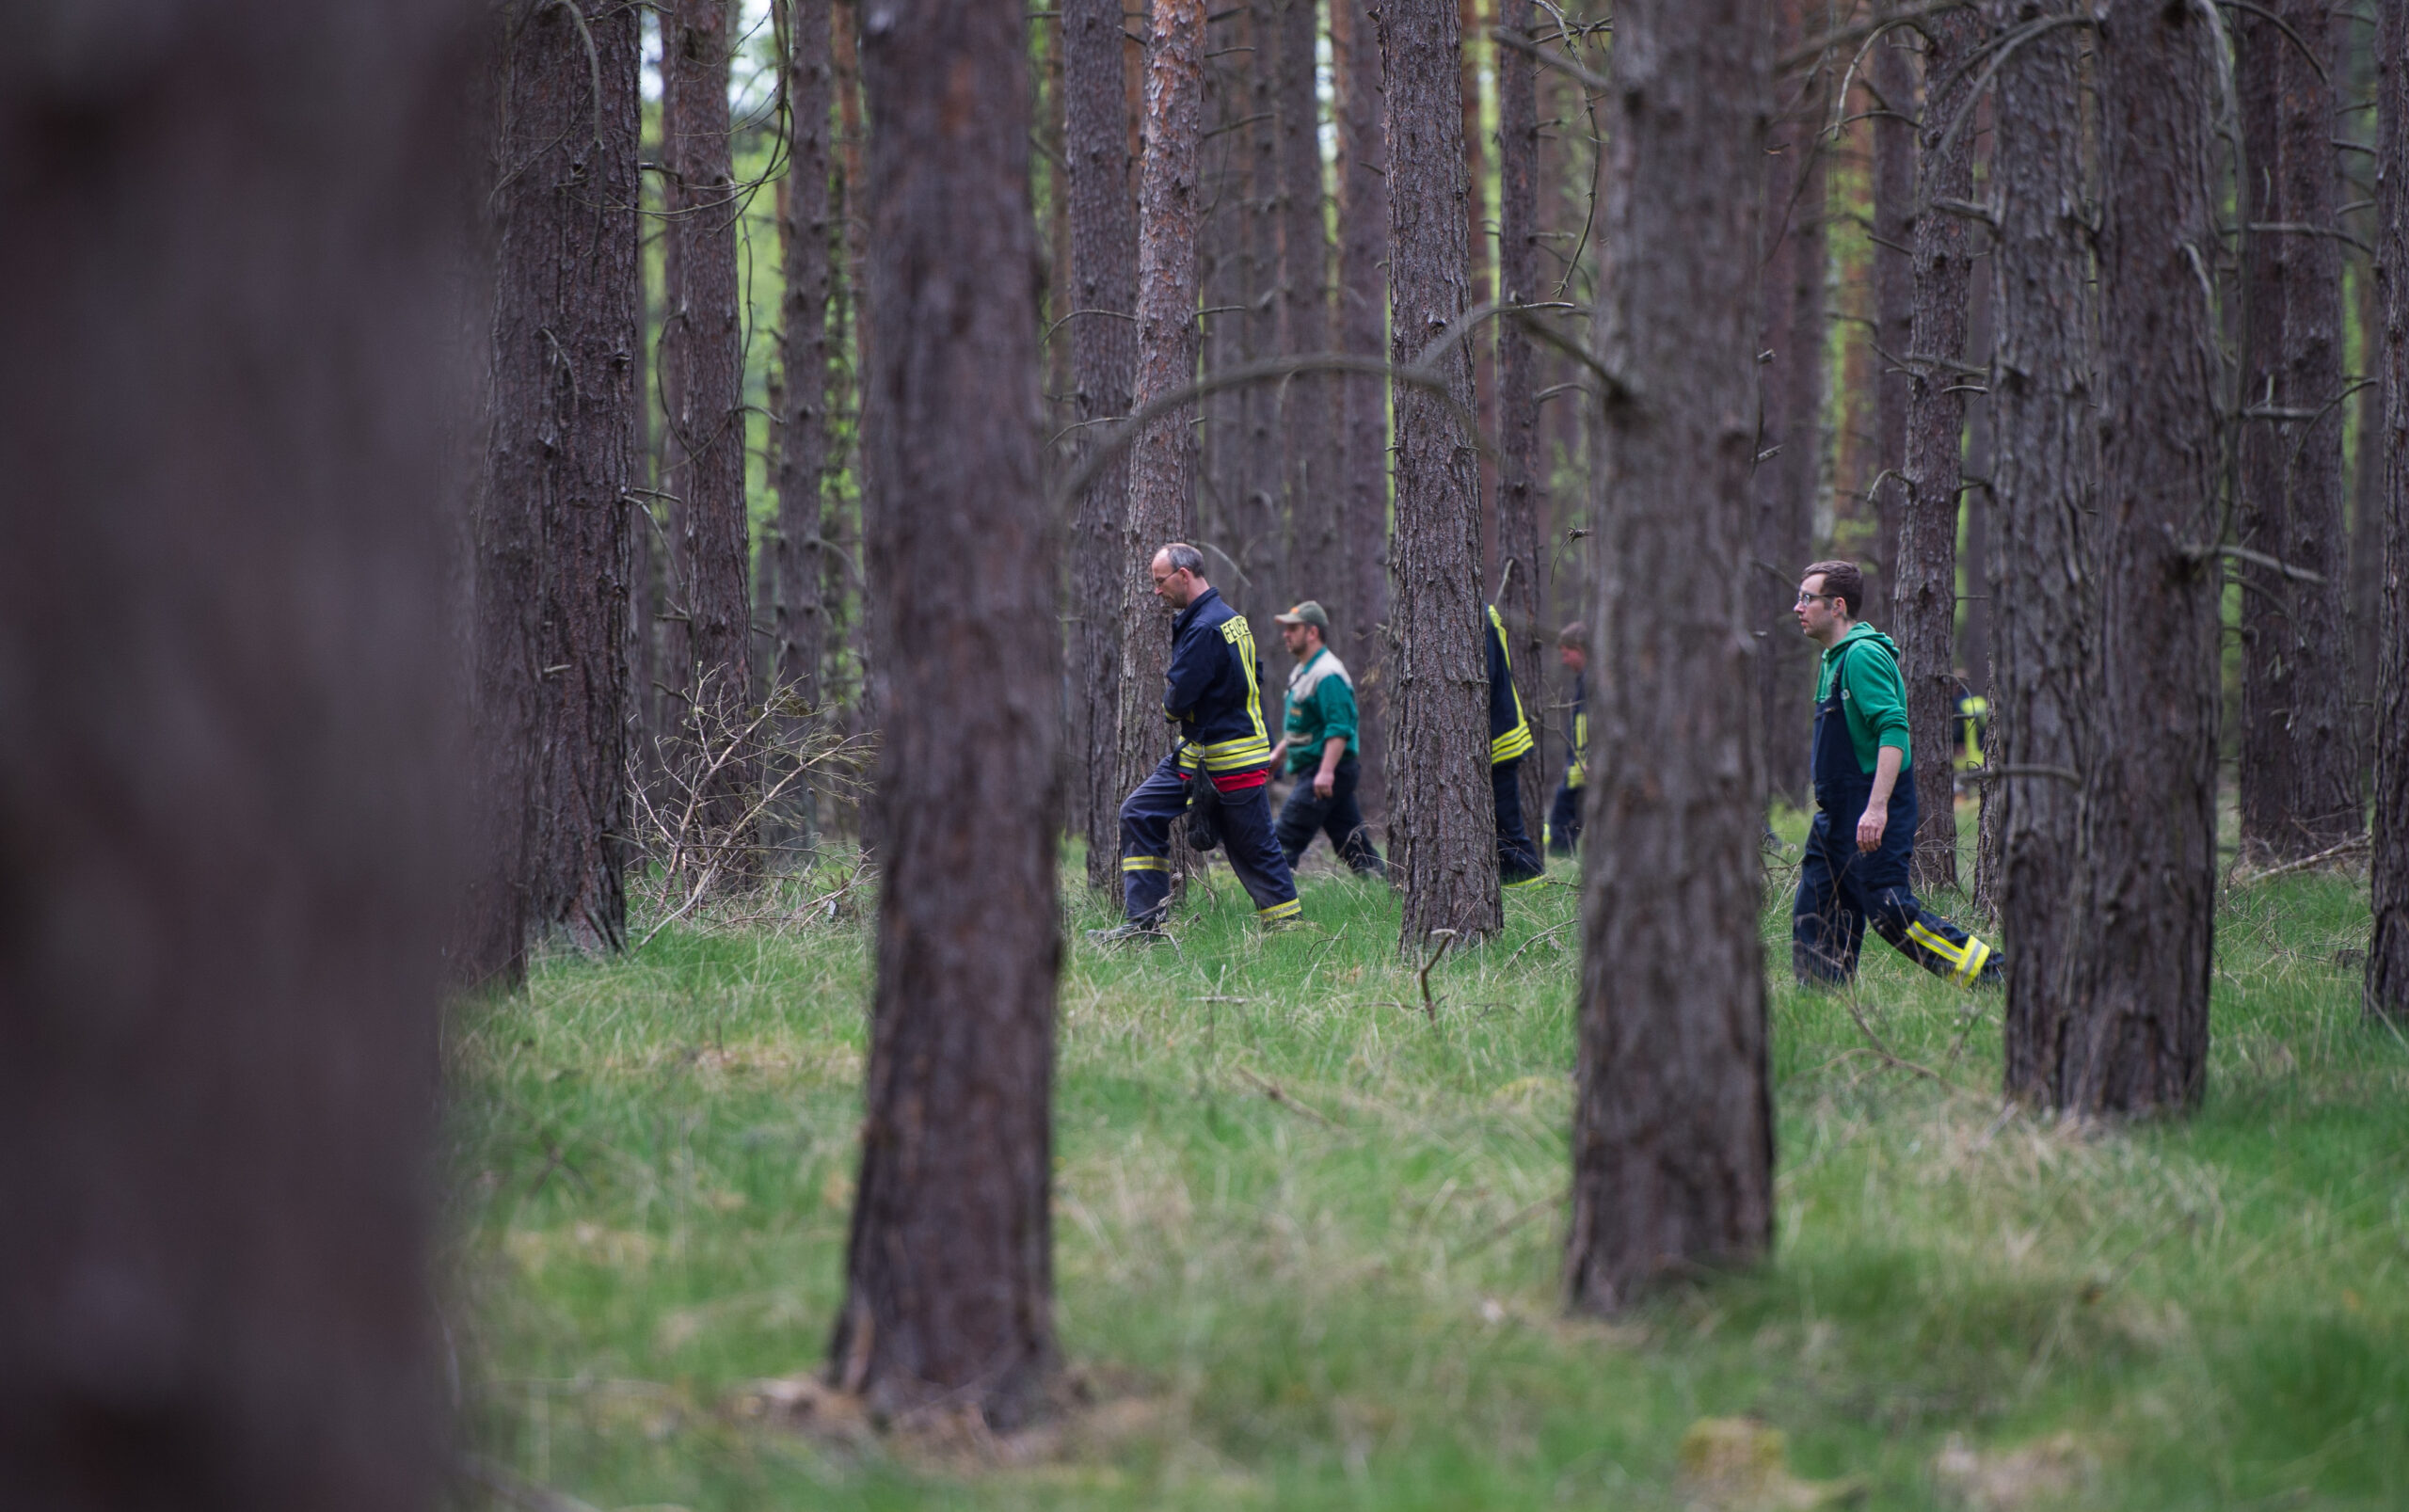 Einsatzkräfte durchsuchen im Hintergrund des Bildes ein Waldstück